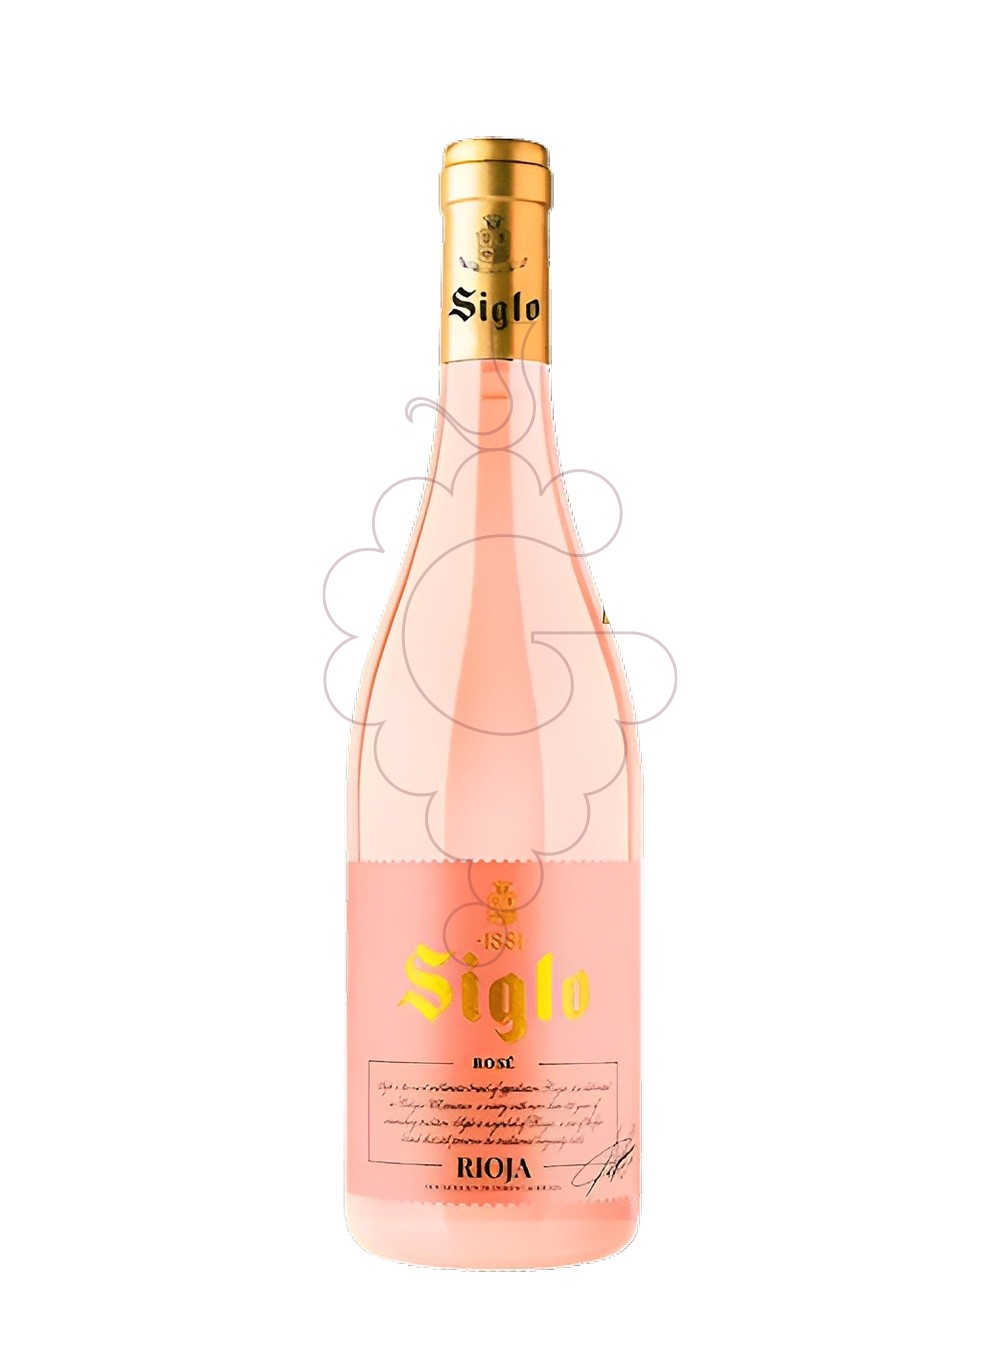 Photo Rosé Siglo rosé wine